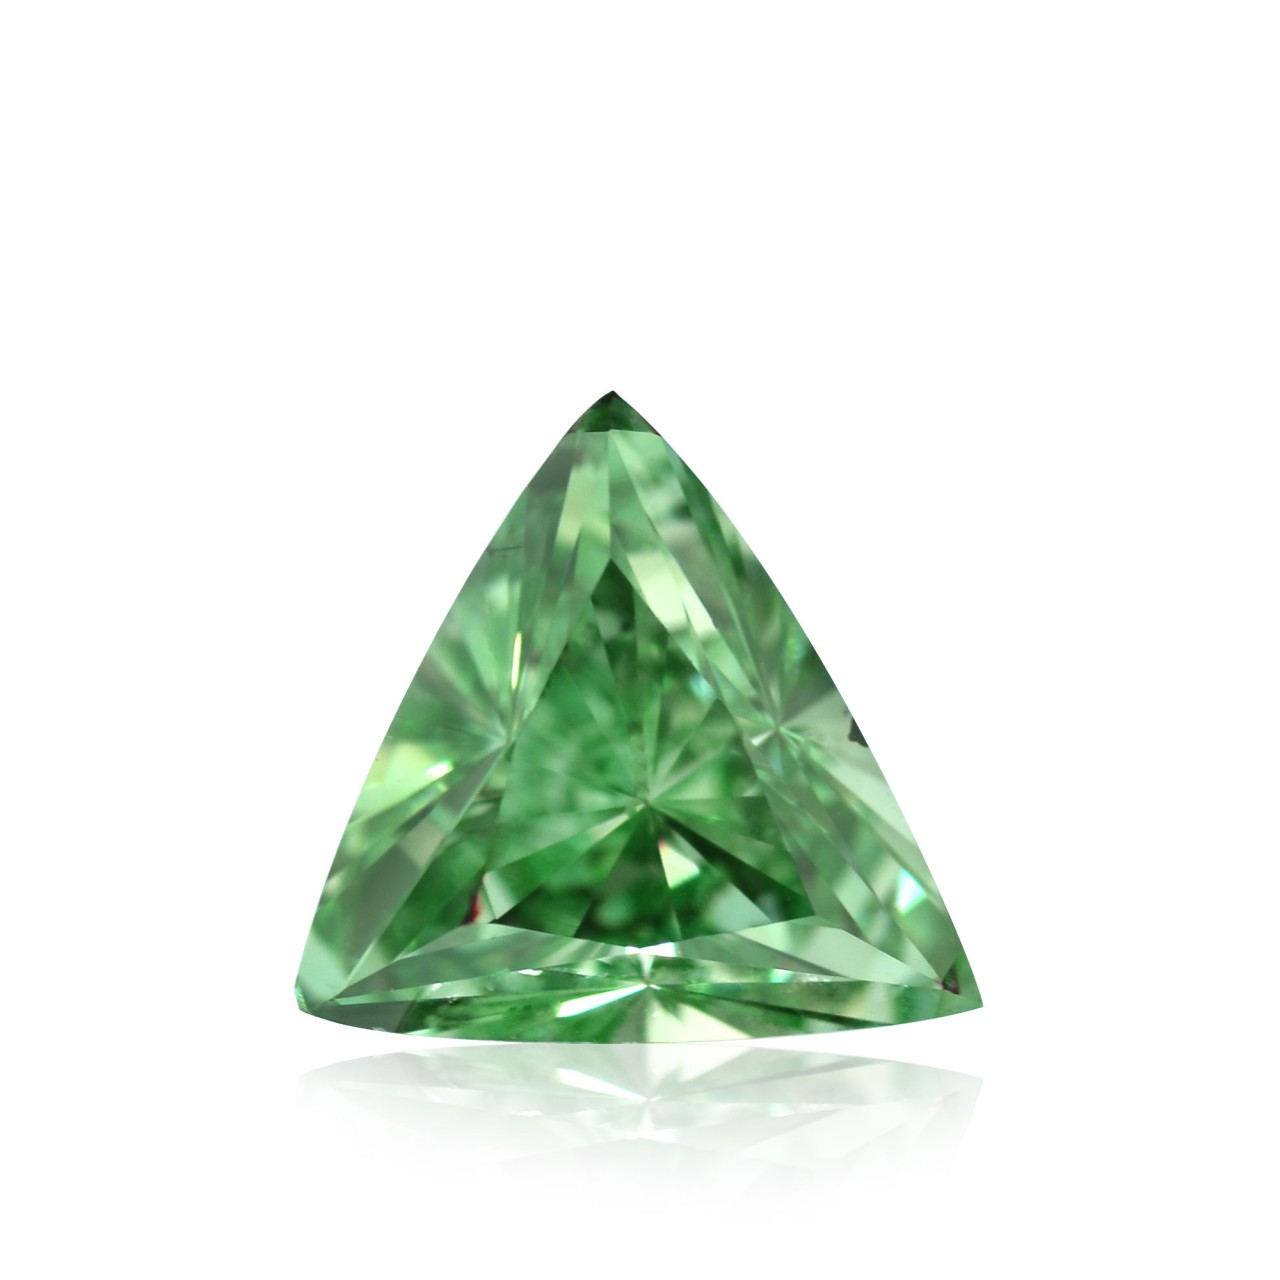 0.55 carat, Fancy Intense Green Blue Diamond, Cushion Shape, SI2 Clarity,  GIA, SKU 401707